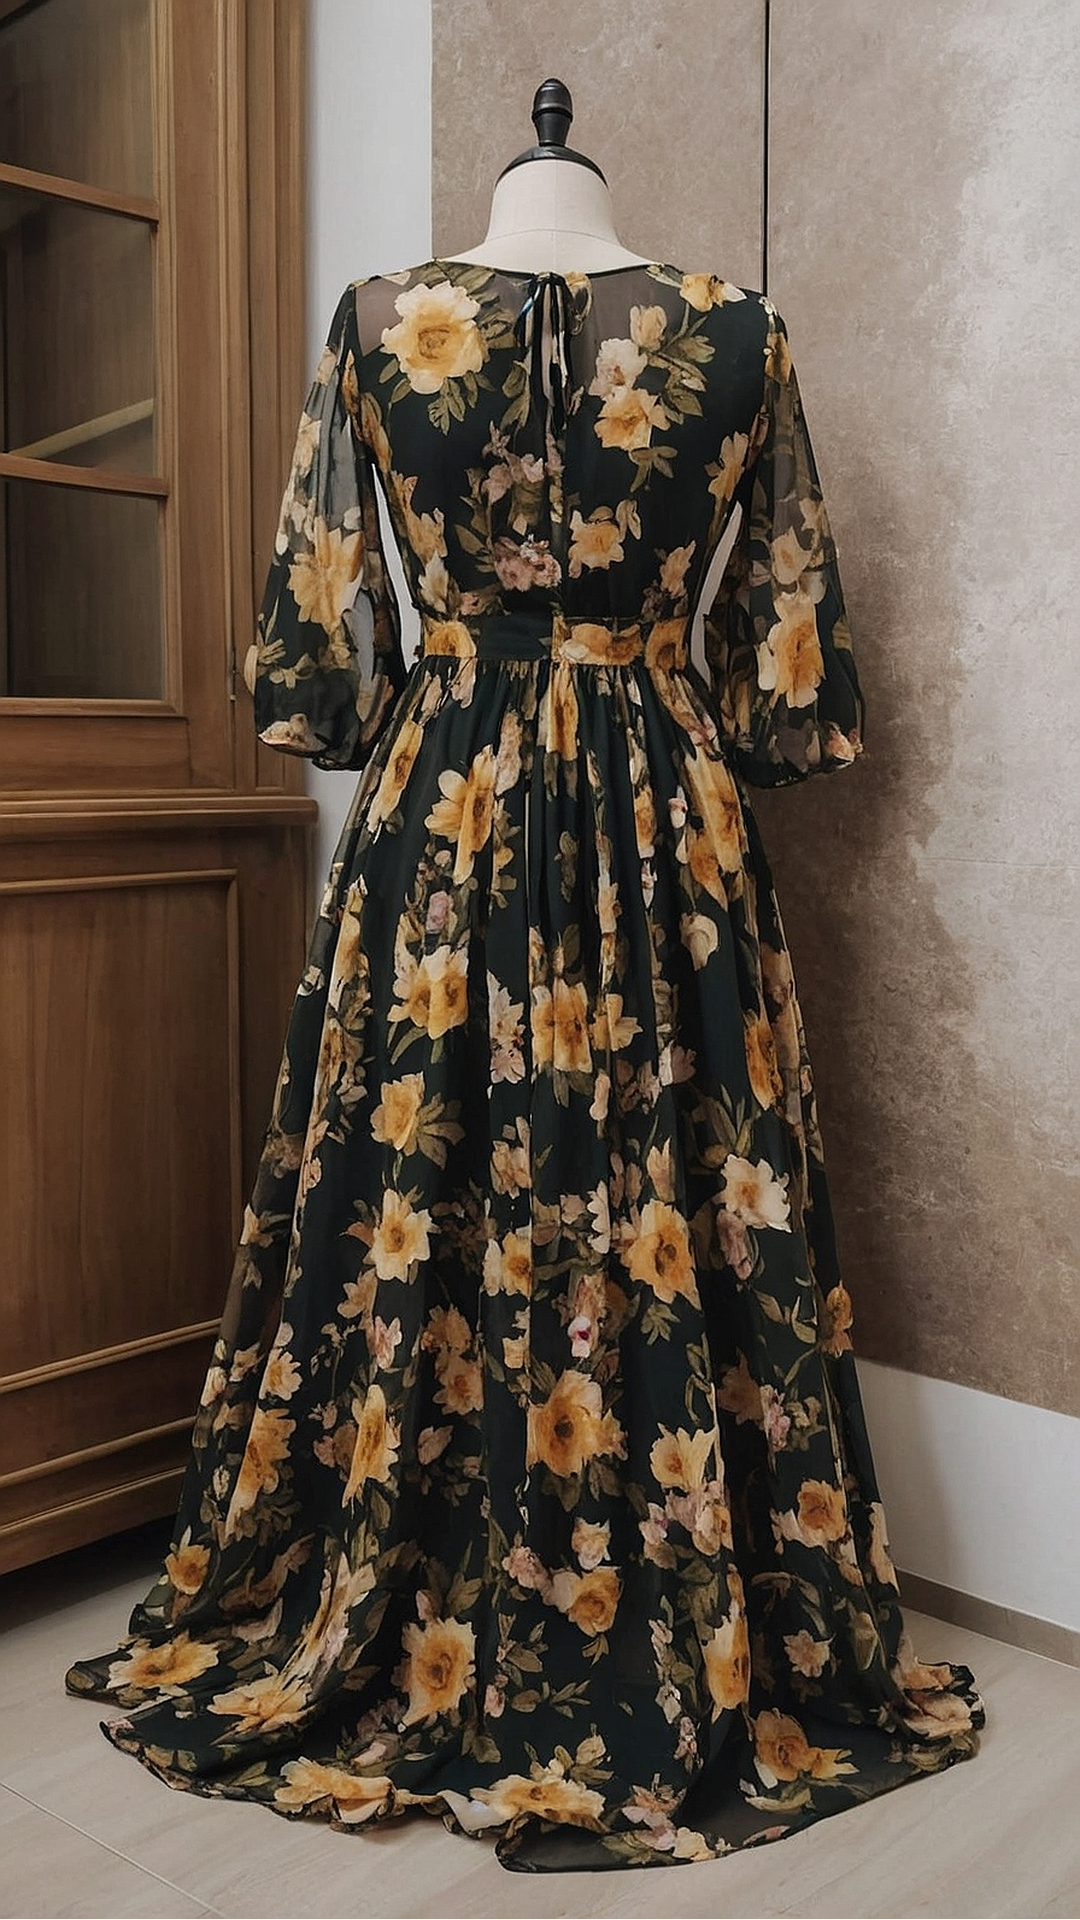 Effortlessly Elegant: Floral Maxi Dress Showcases